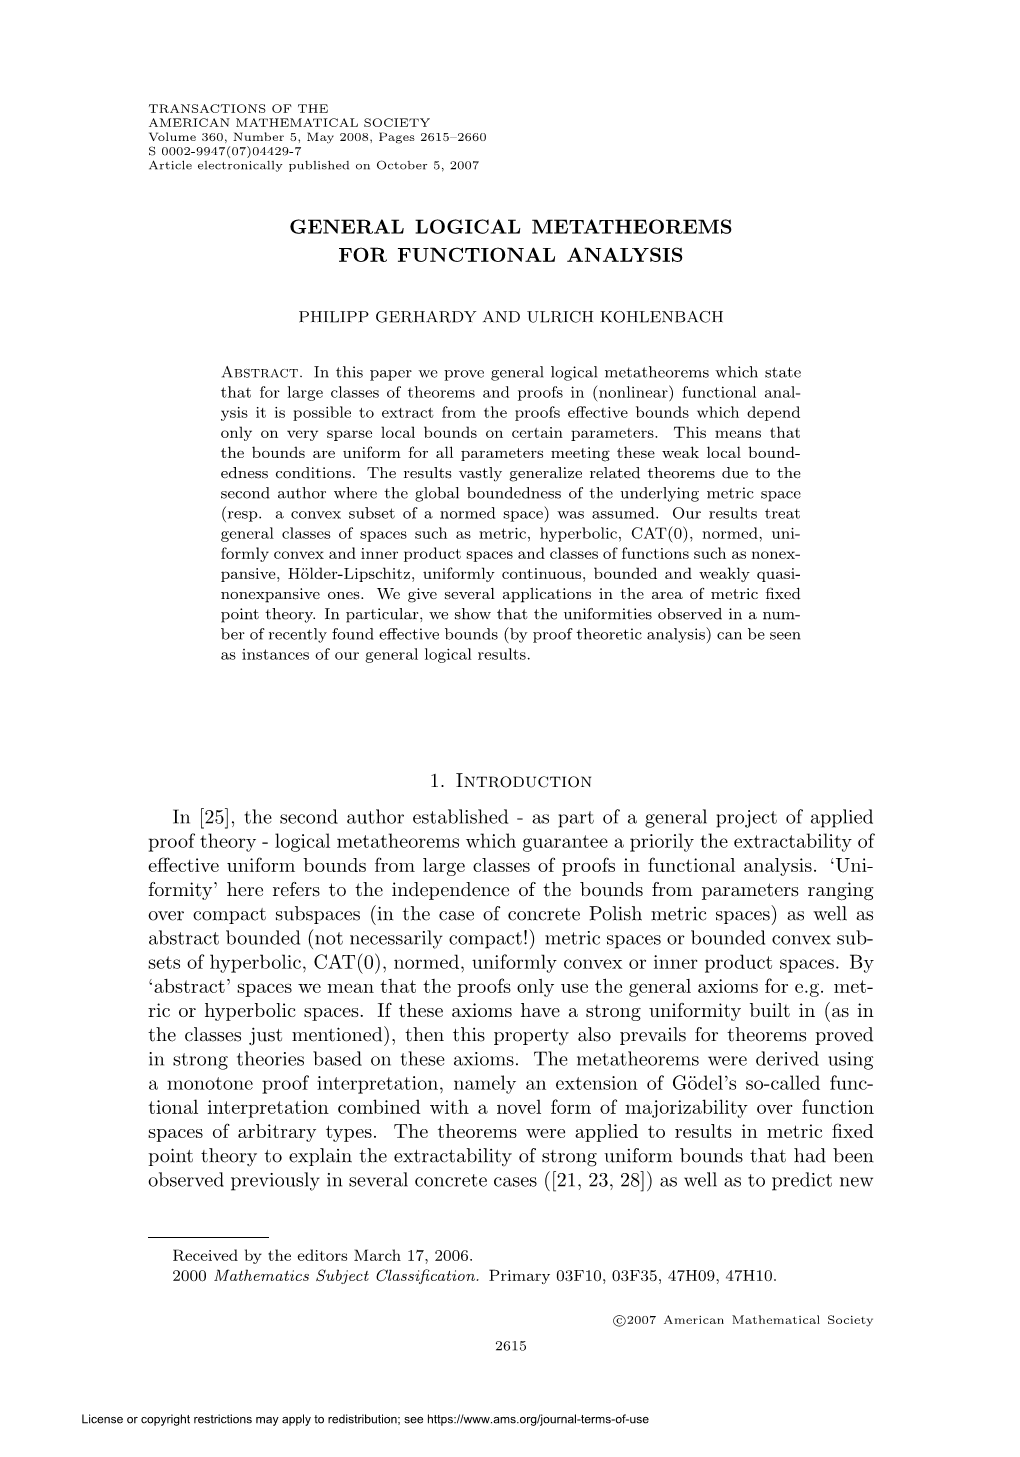 General Logical Metatheorems for Functional Analysis